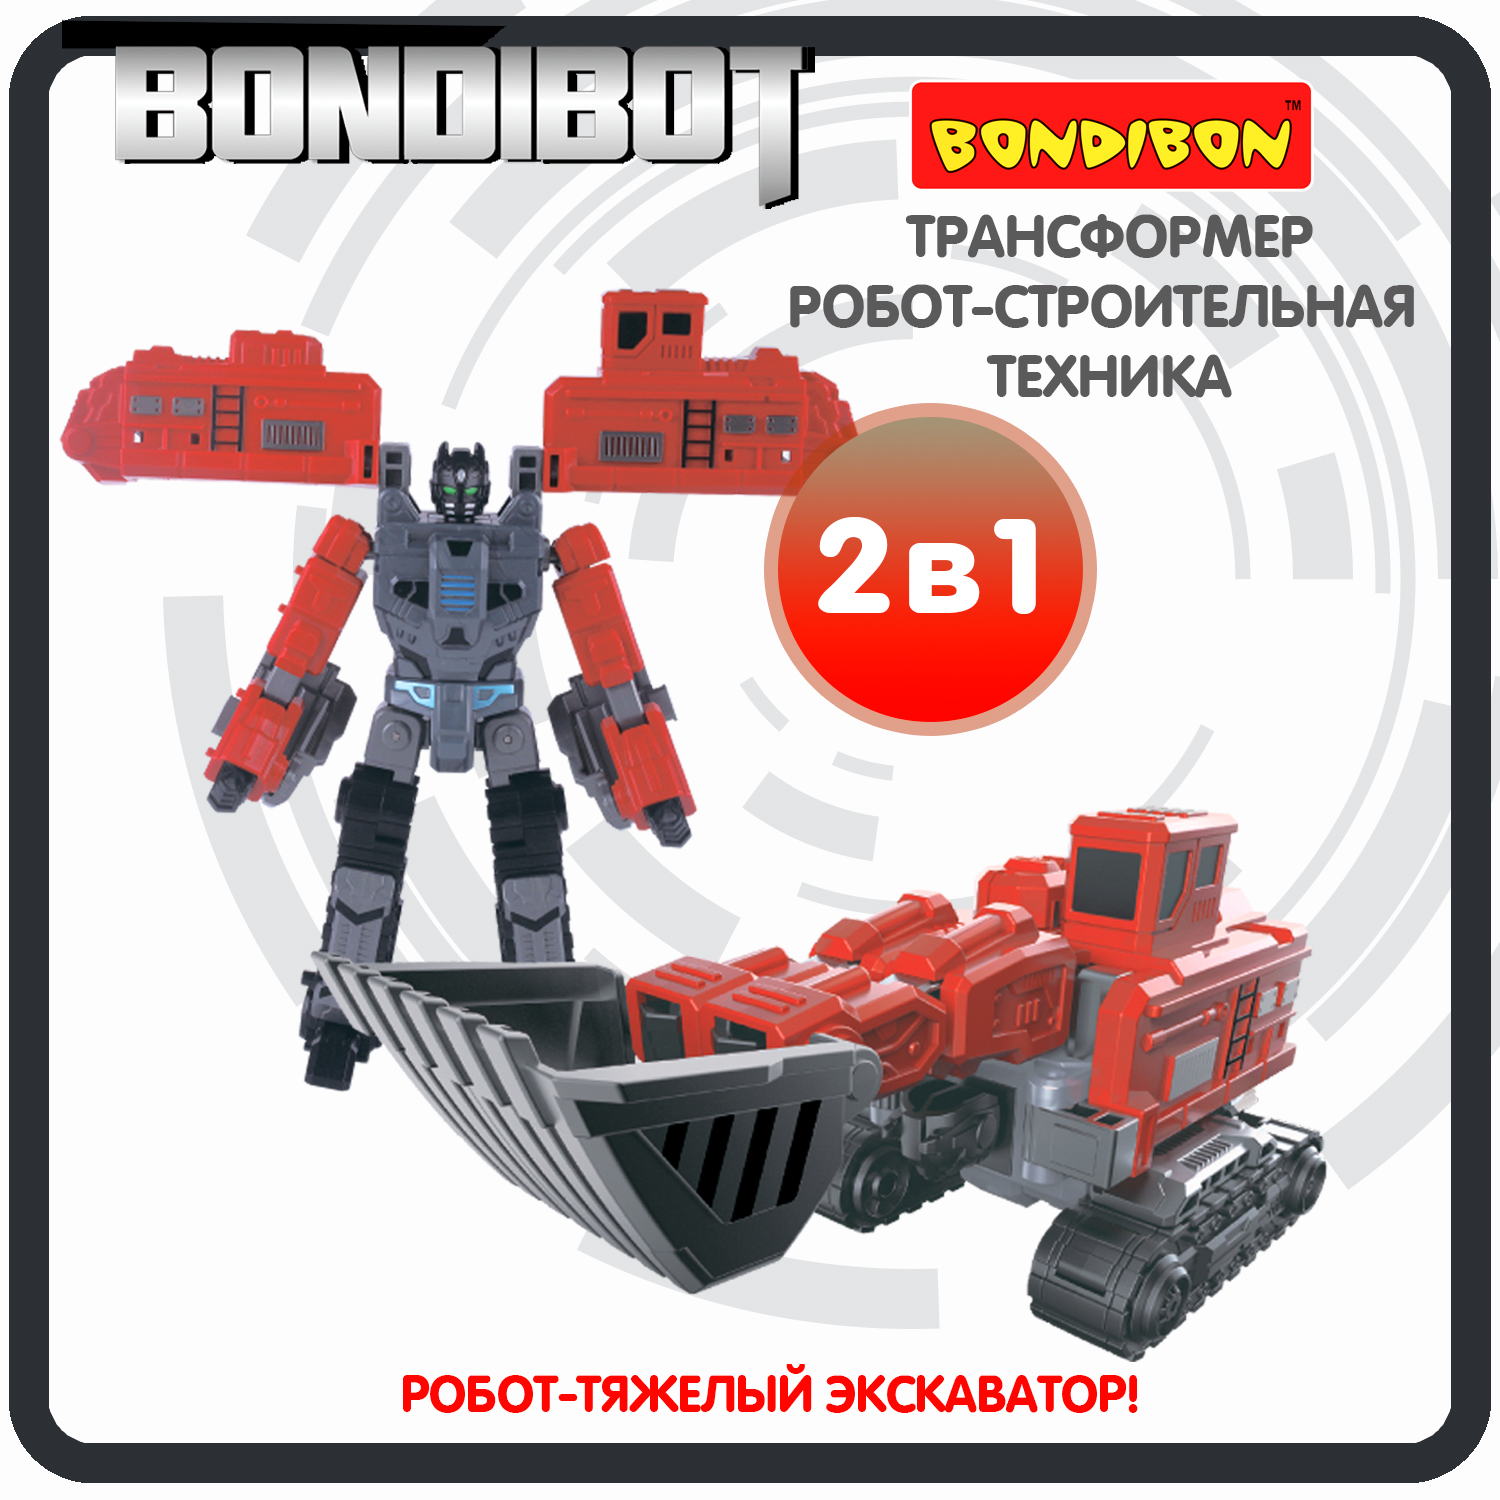 Трансформер робот-строительная техника, 2в1 BONDIBOT Bondibon, тяжёлый экскаватор / ВВ6057 трансформер робот строительная техника 2в1 bondibot bondibon самосвал вв6052